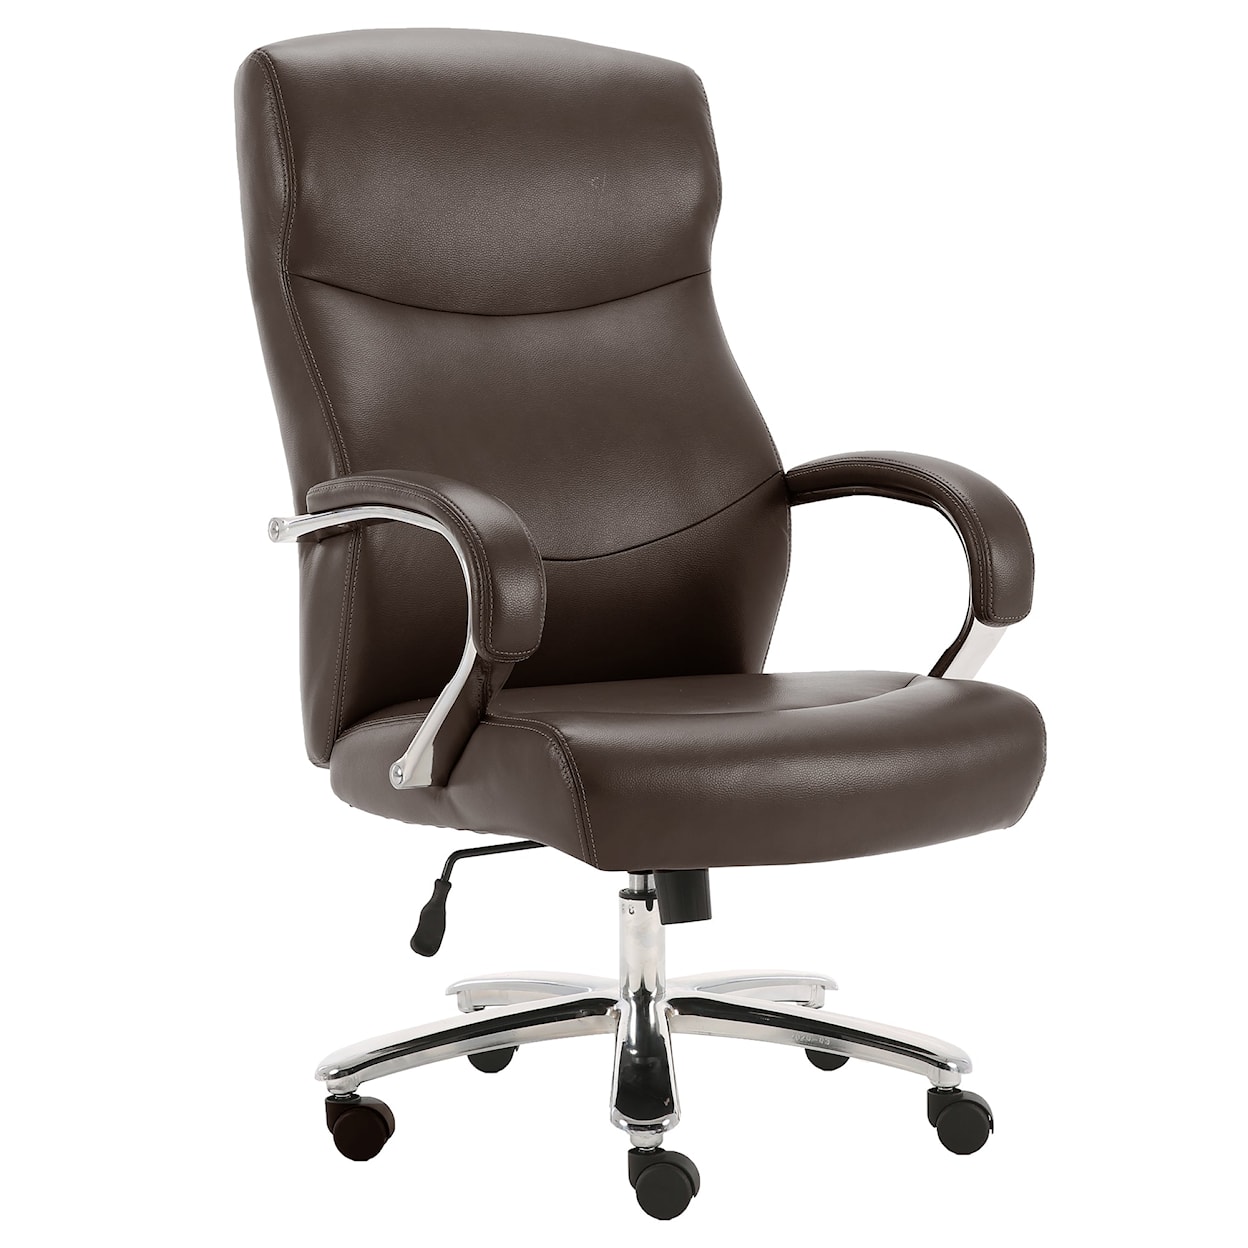 PH Dc#315Hd-Cco - Desk Chair Desk Chair